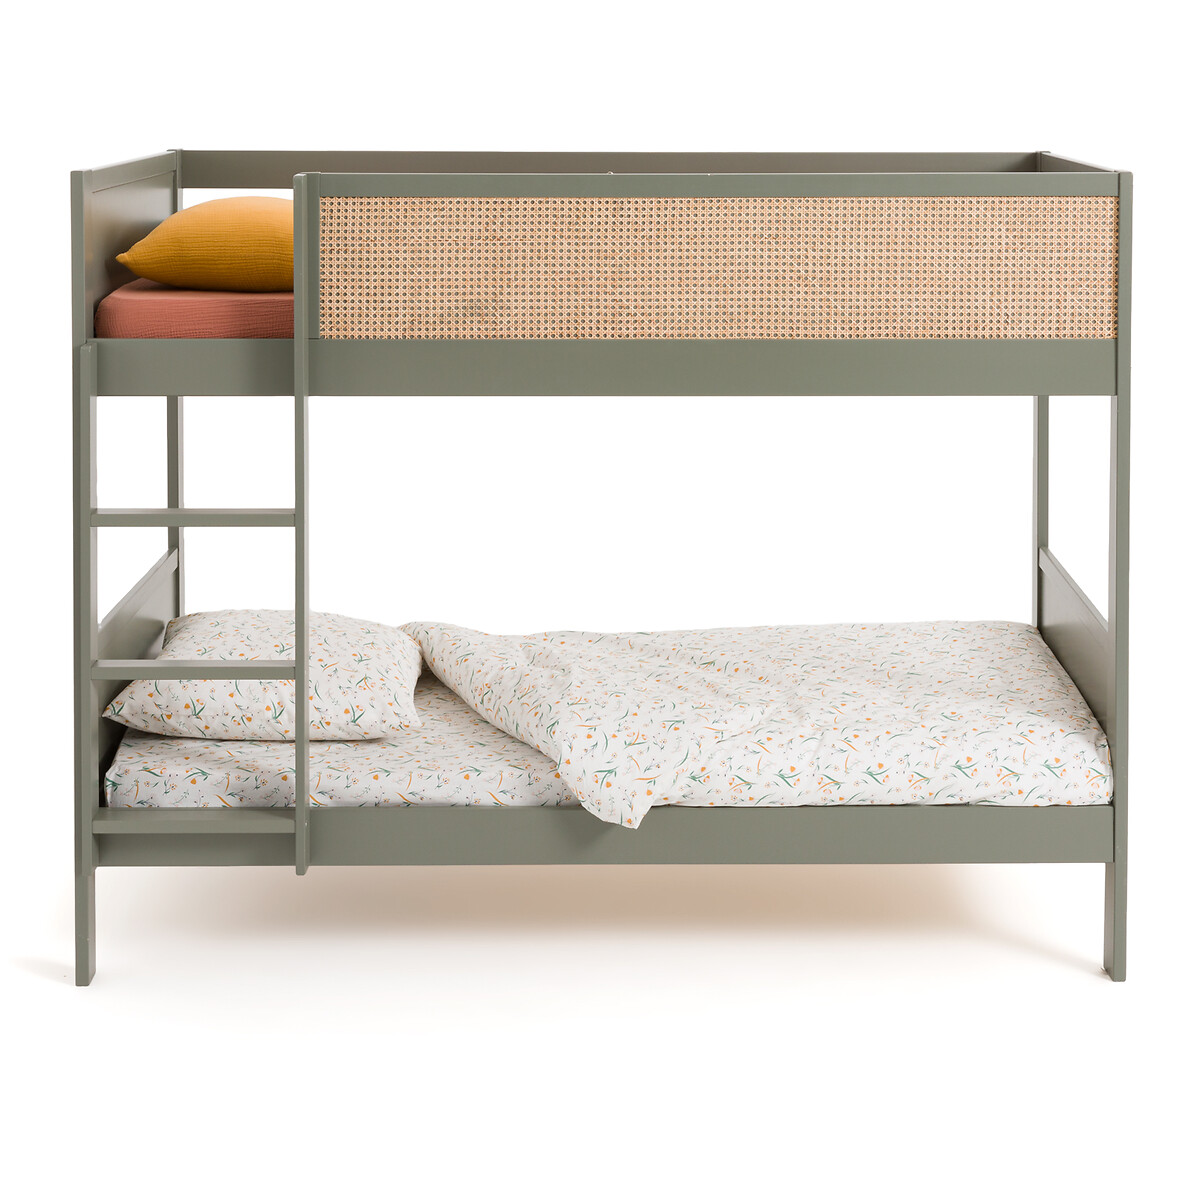 Кровать двухъярусная из сосны и плетеного материала Caneo  90 x 190 см зеленый LaRedoute, размер 90 x 190 см - фото 2